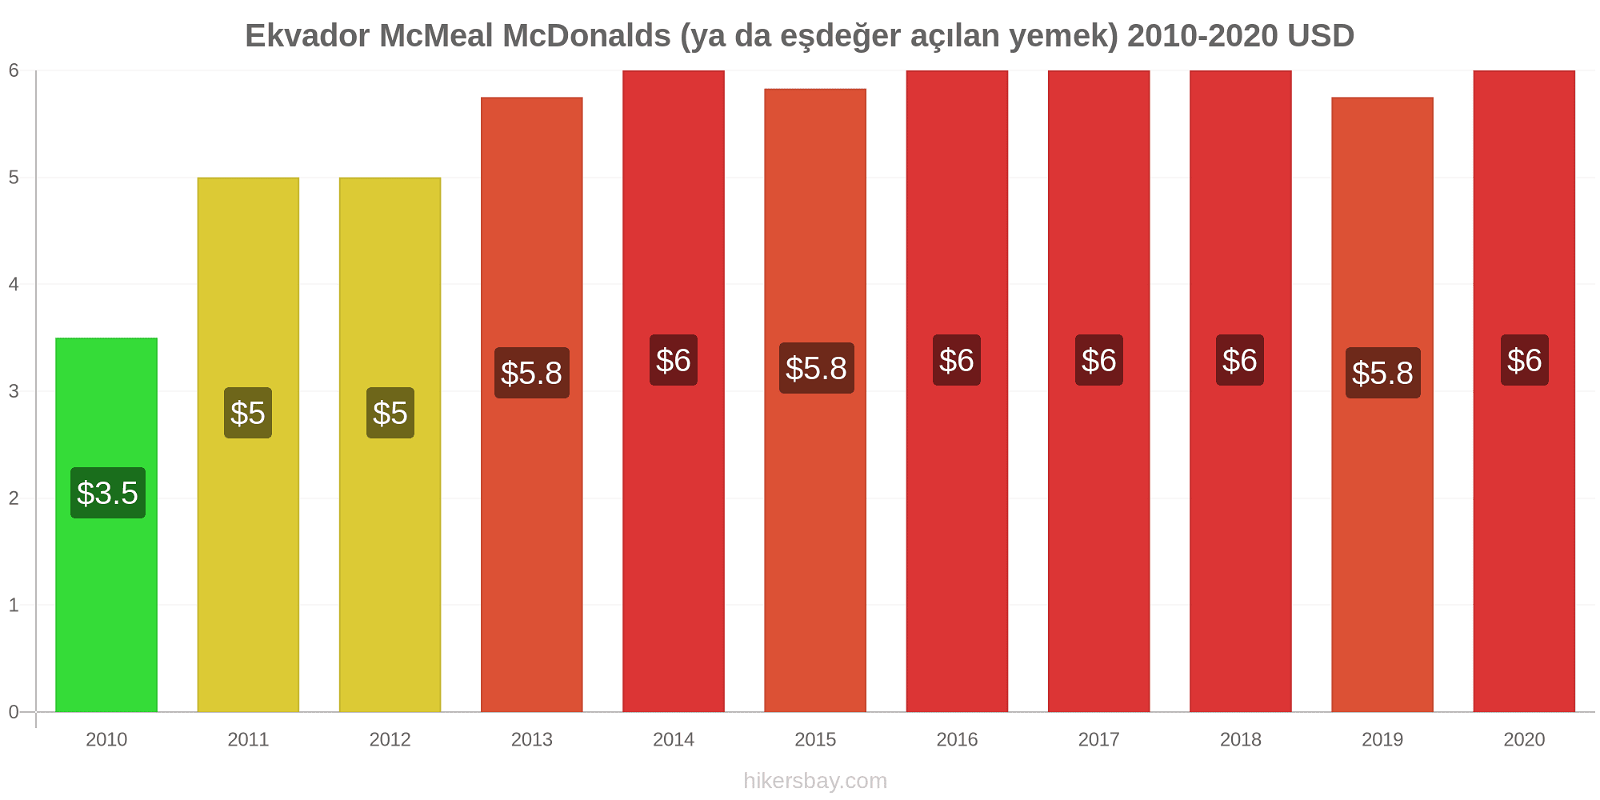 Ekvador fiyat değişiklikleri McMeal McDonalds (ya da eşdeğer açılan yemek) hikersbay.com